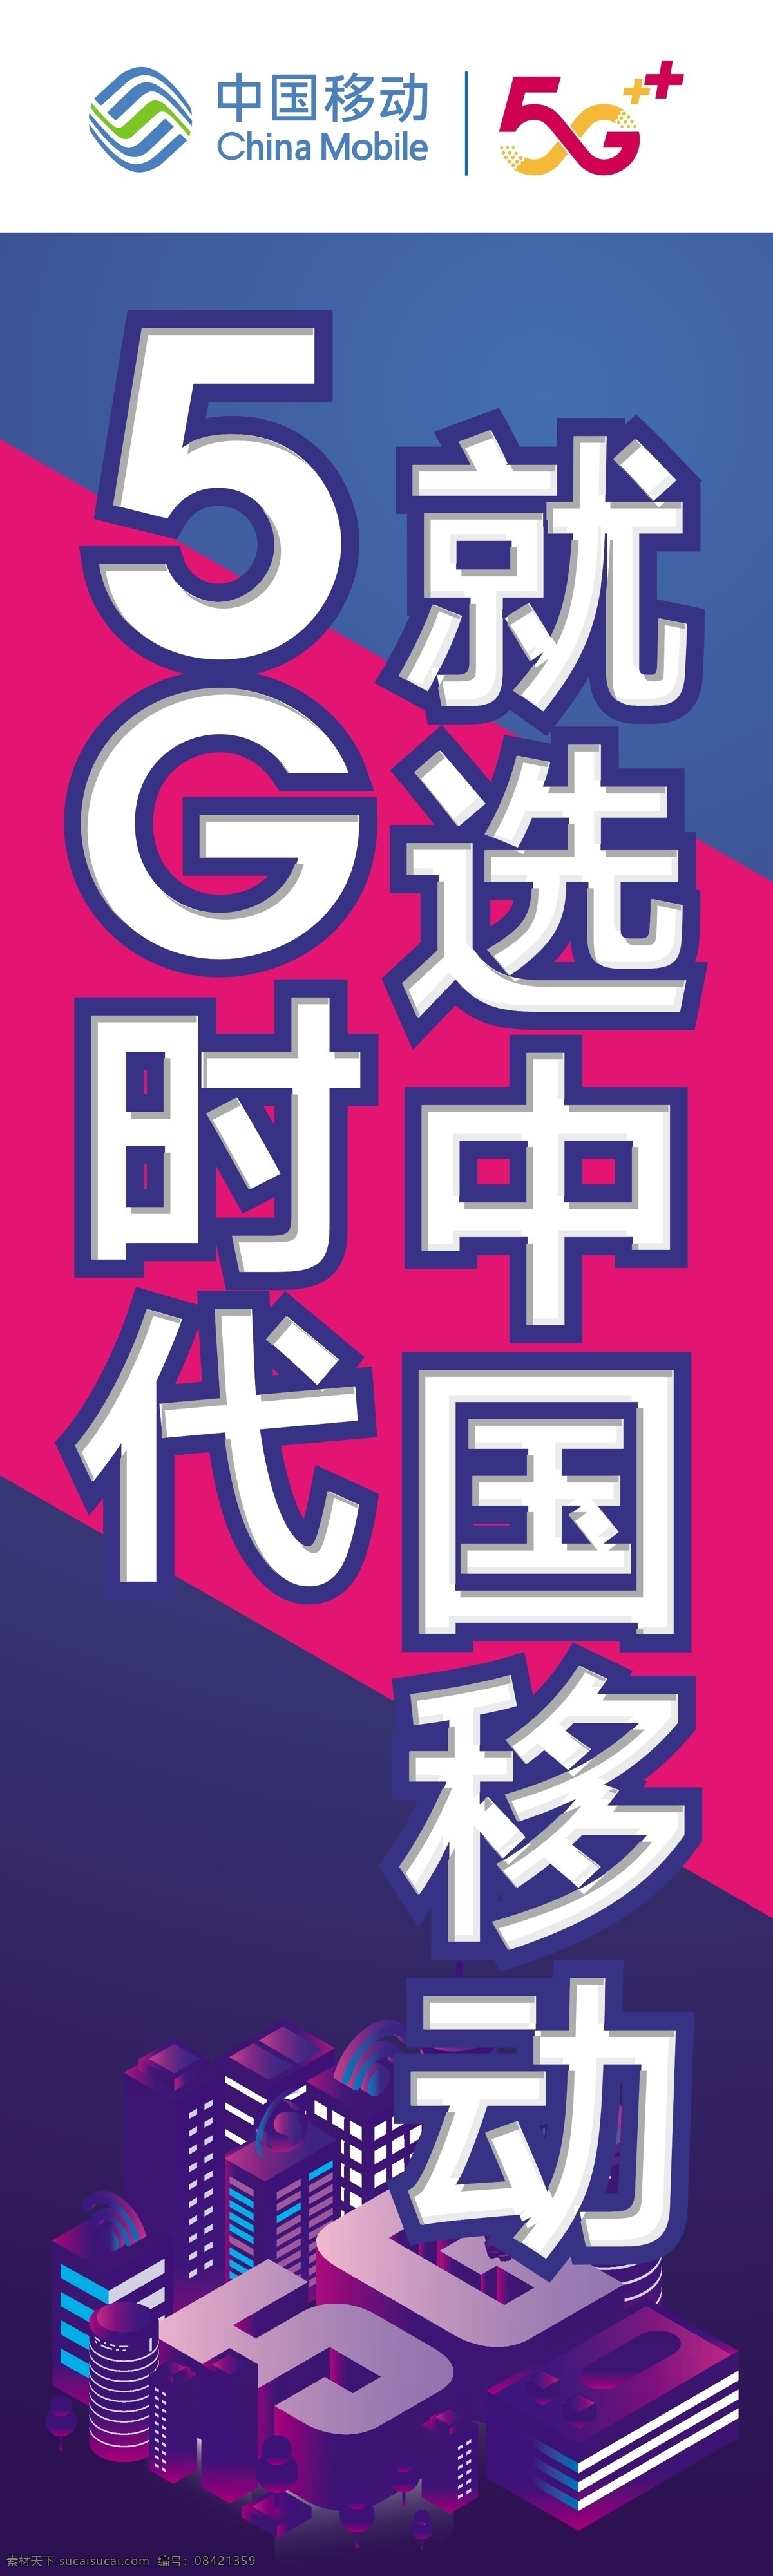 5g 时代 选中 国 移动 条幅 注水旗 写真布 移动5g 科技感 室内广告设计